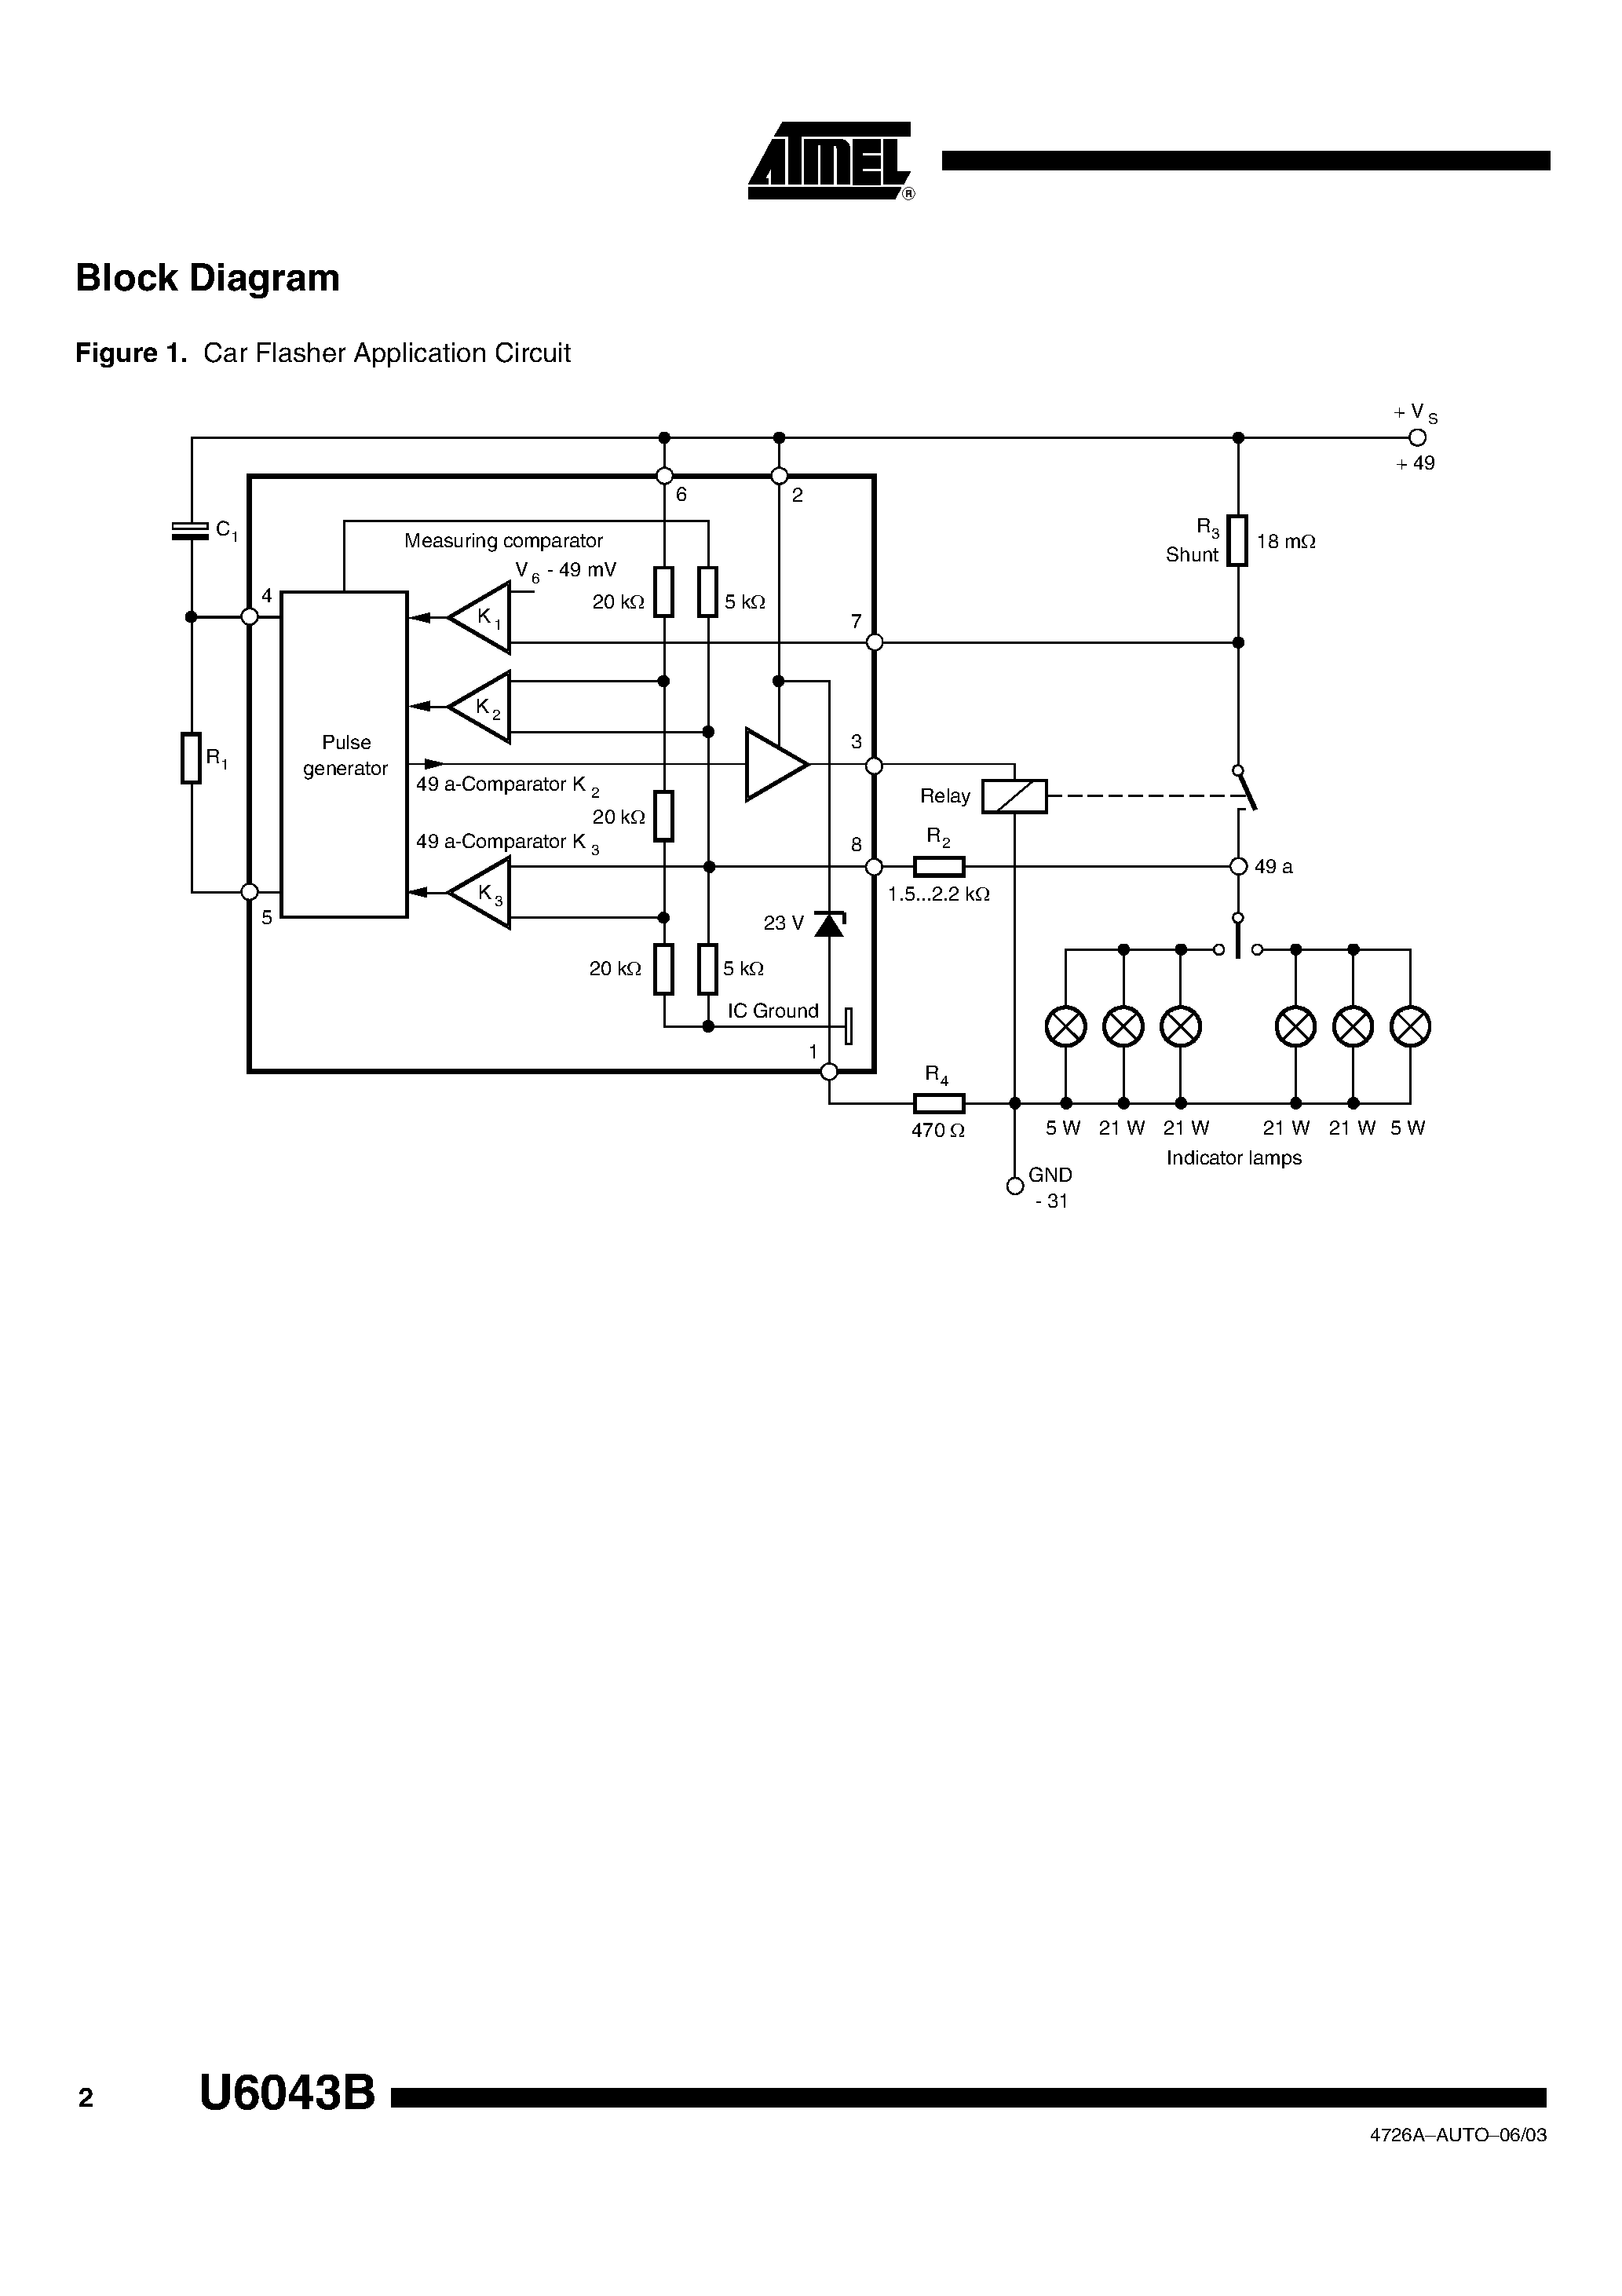 Datasheet U6043B-FP - FLASHER IC WITH 19-M SHUNT page 2